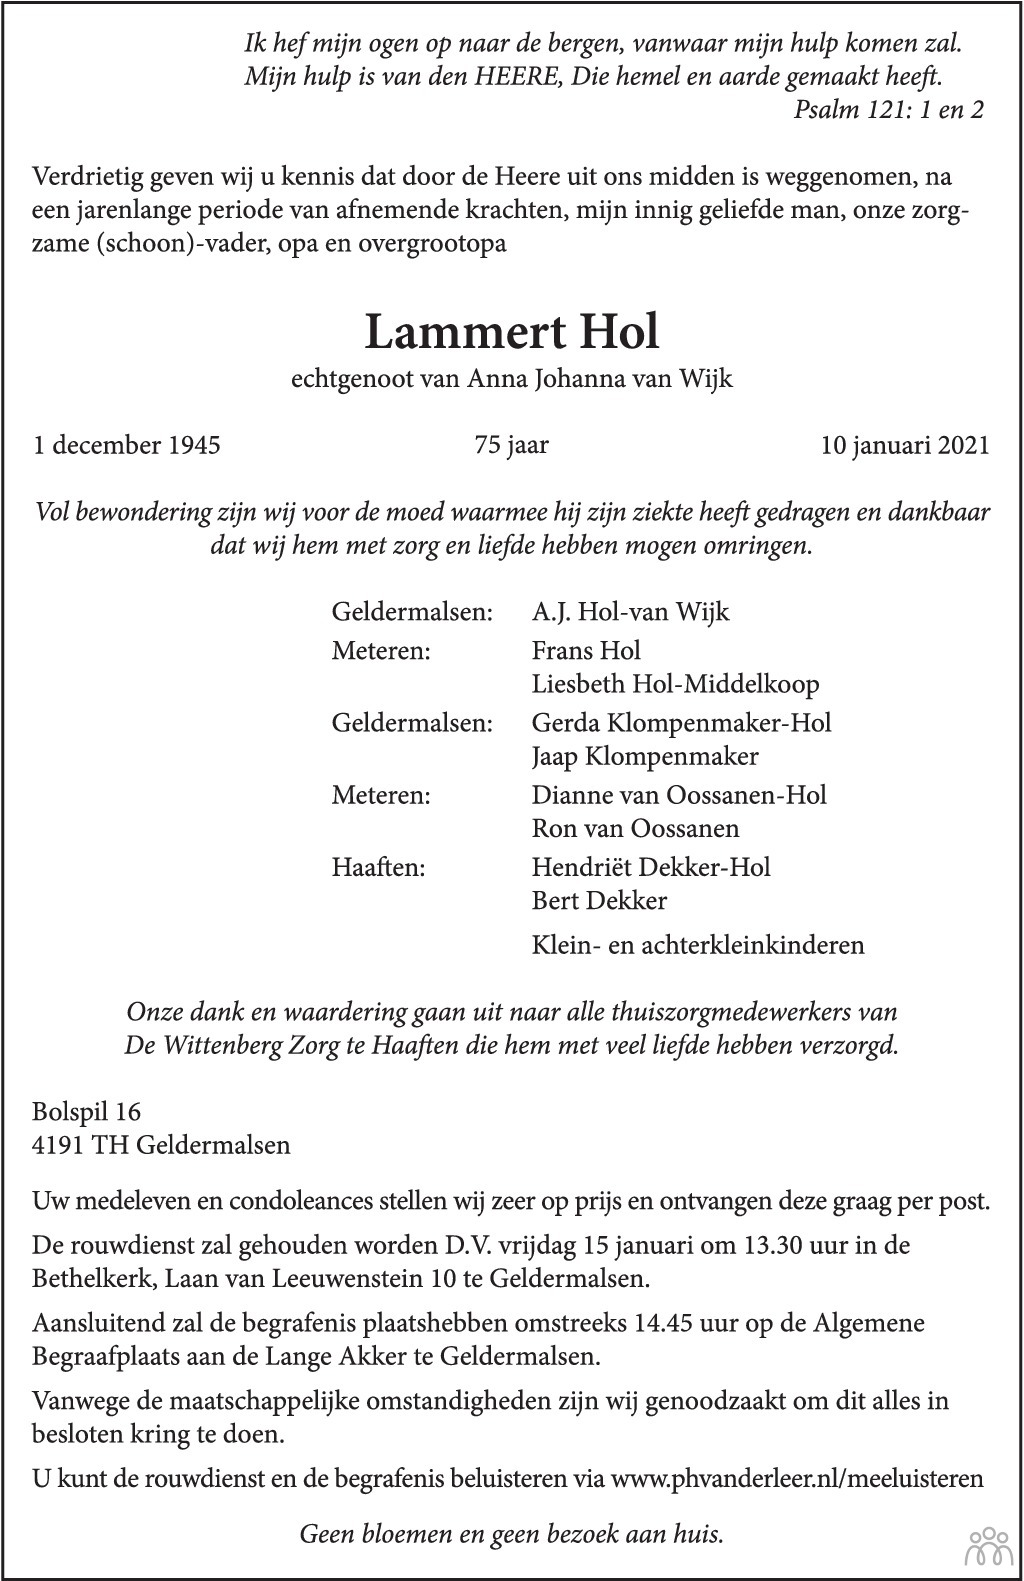 Gehoorzaam opgroeien vrouwelijk Lammert Hol ✝ 10-01-2021 overlijdensbericht en condoleances - Mensenlinq.nl